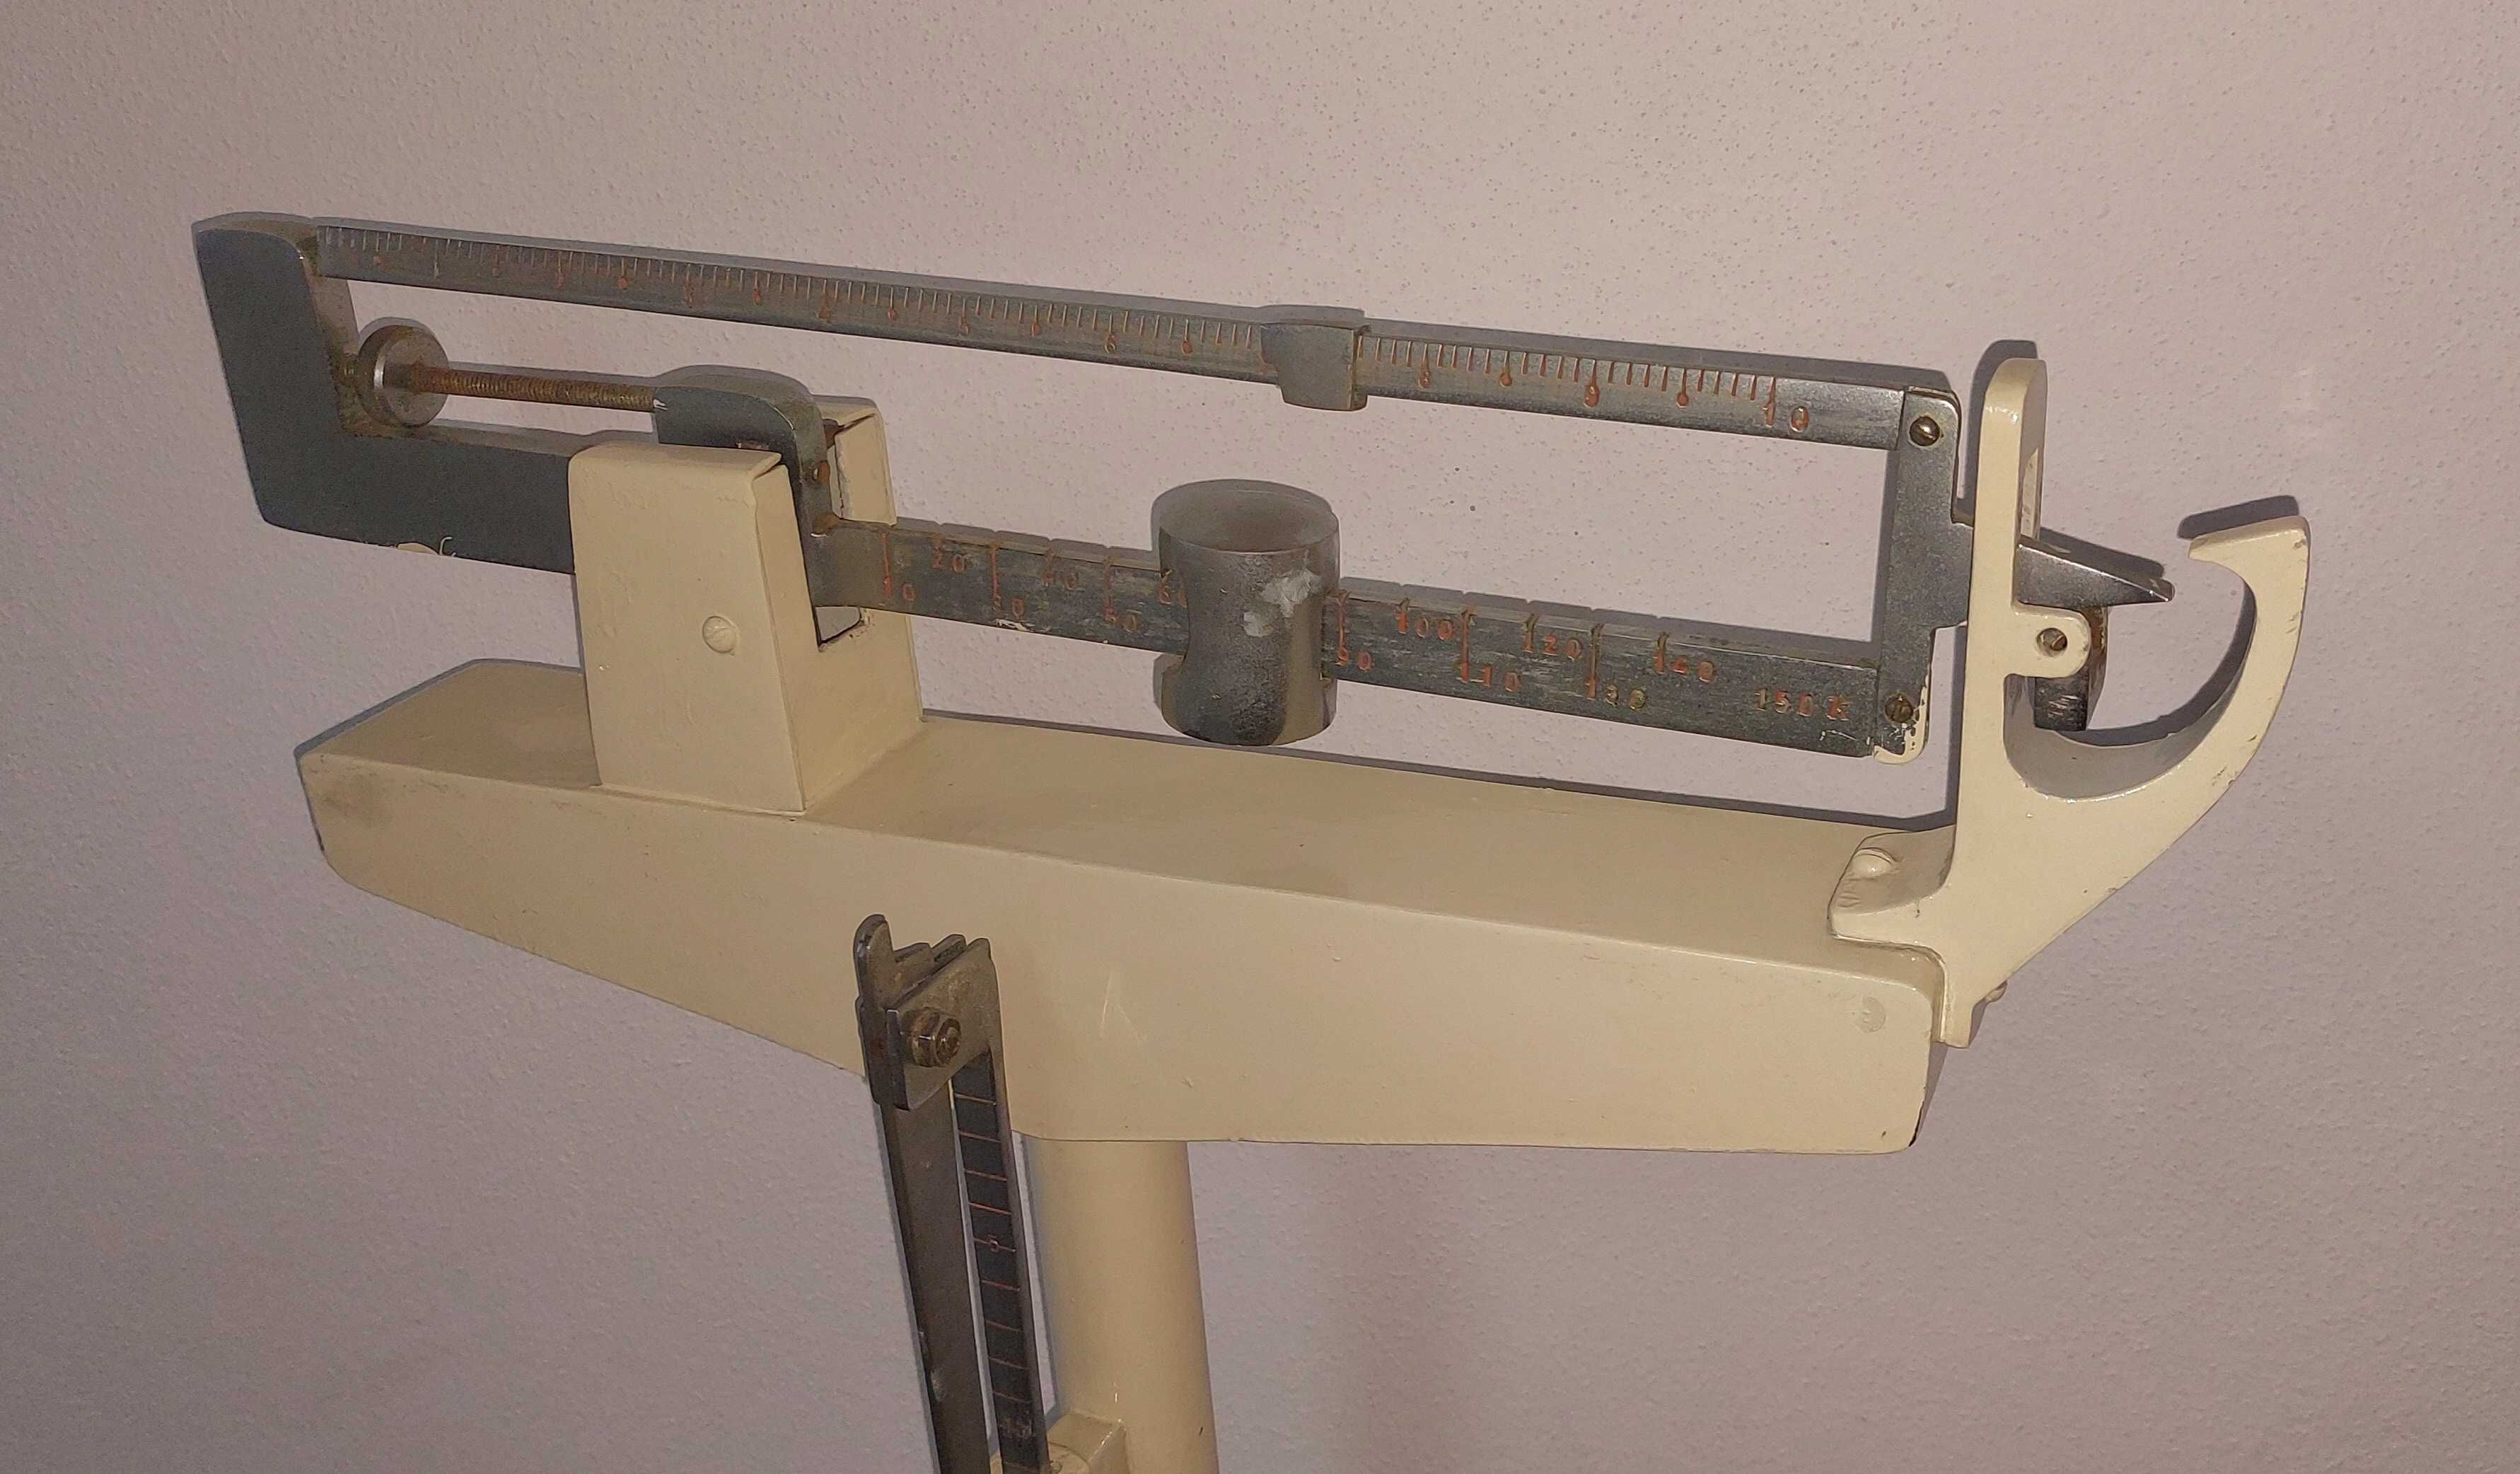 Balança de consultório médico antiga com medidor de altura